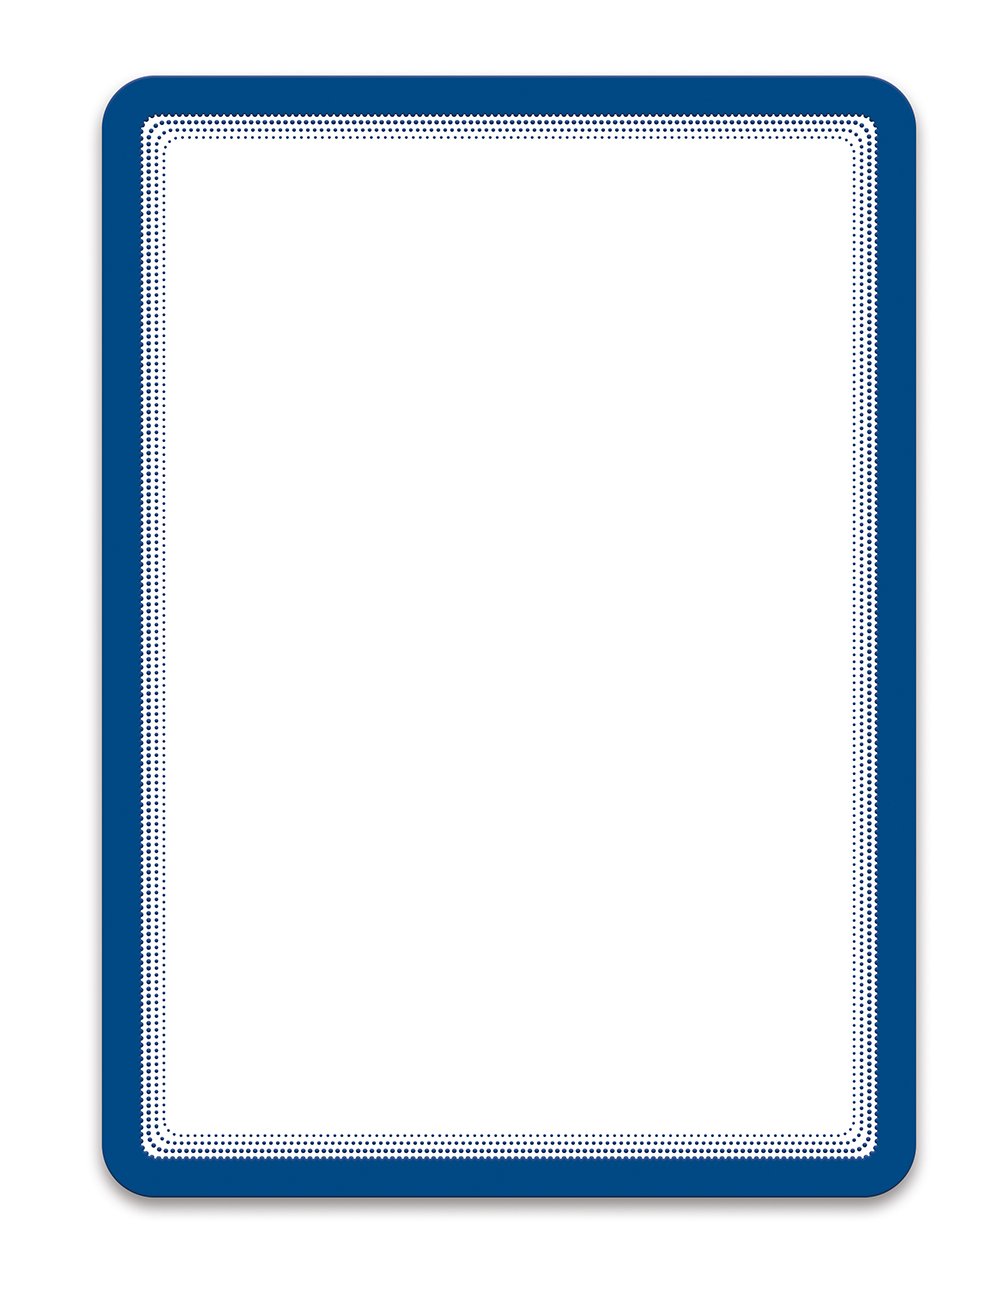 djois Magneto - samolepicí rámeček, A4, modrý, 2 ks